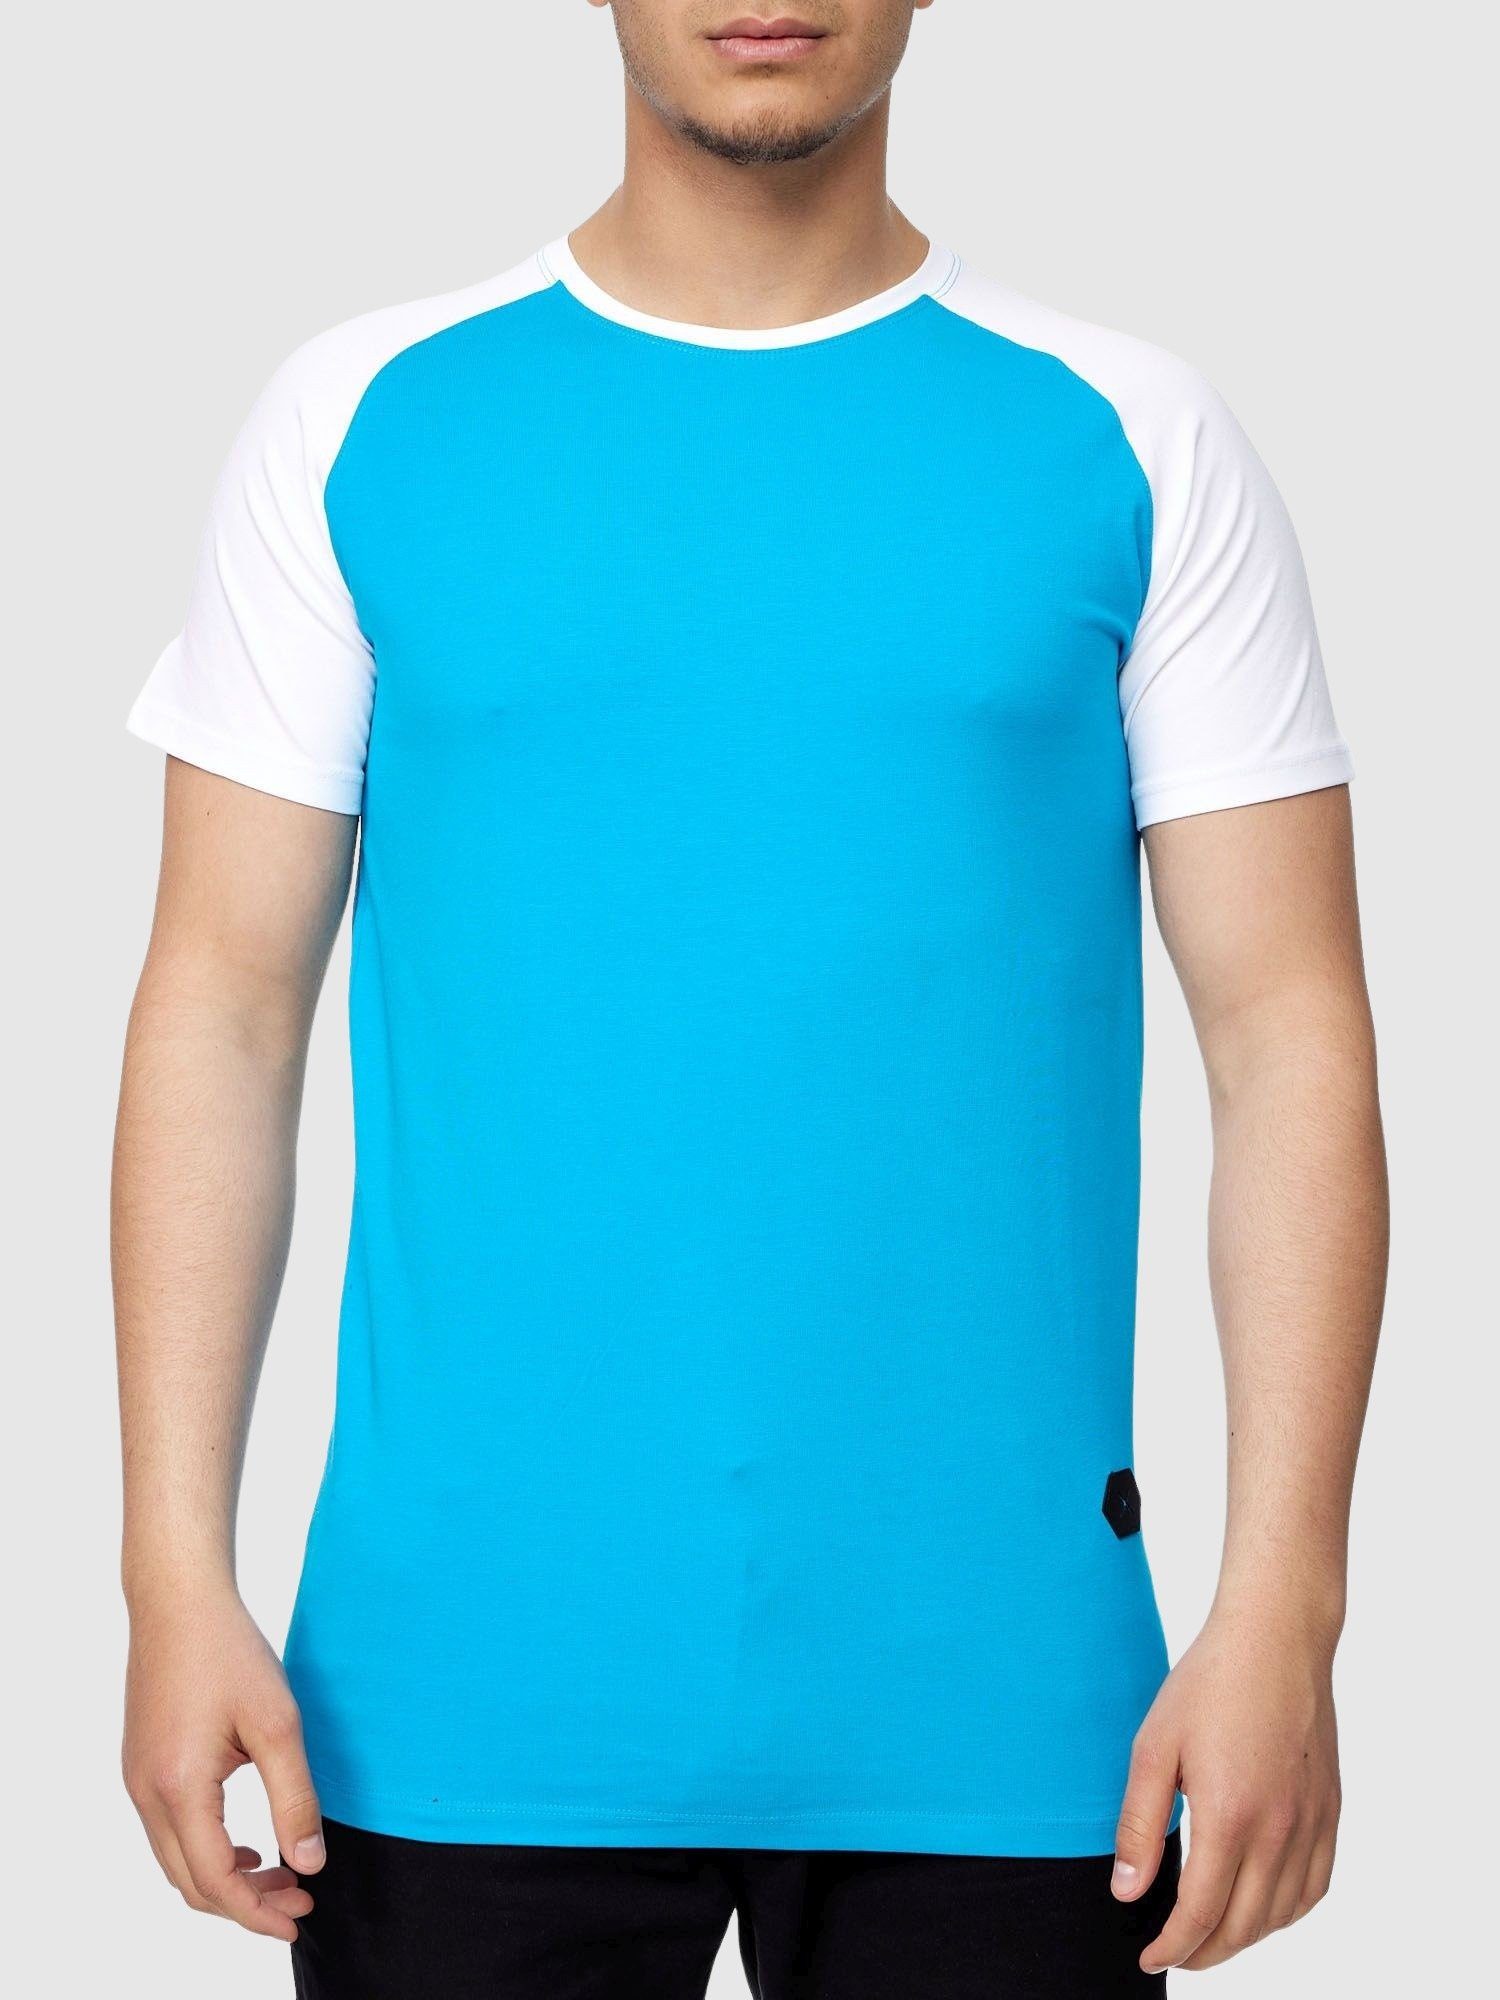 John Poloshirt T-Shirt Tee (Shirt Fitness Türkis T-Shirt Shirt Polo John Tshirt Polo Weiss Kayna Freizeit Tee, T Kurzarmshirt Herren 1-tlg) für Kayna Casual Männer